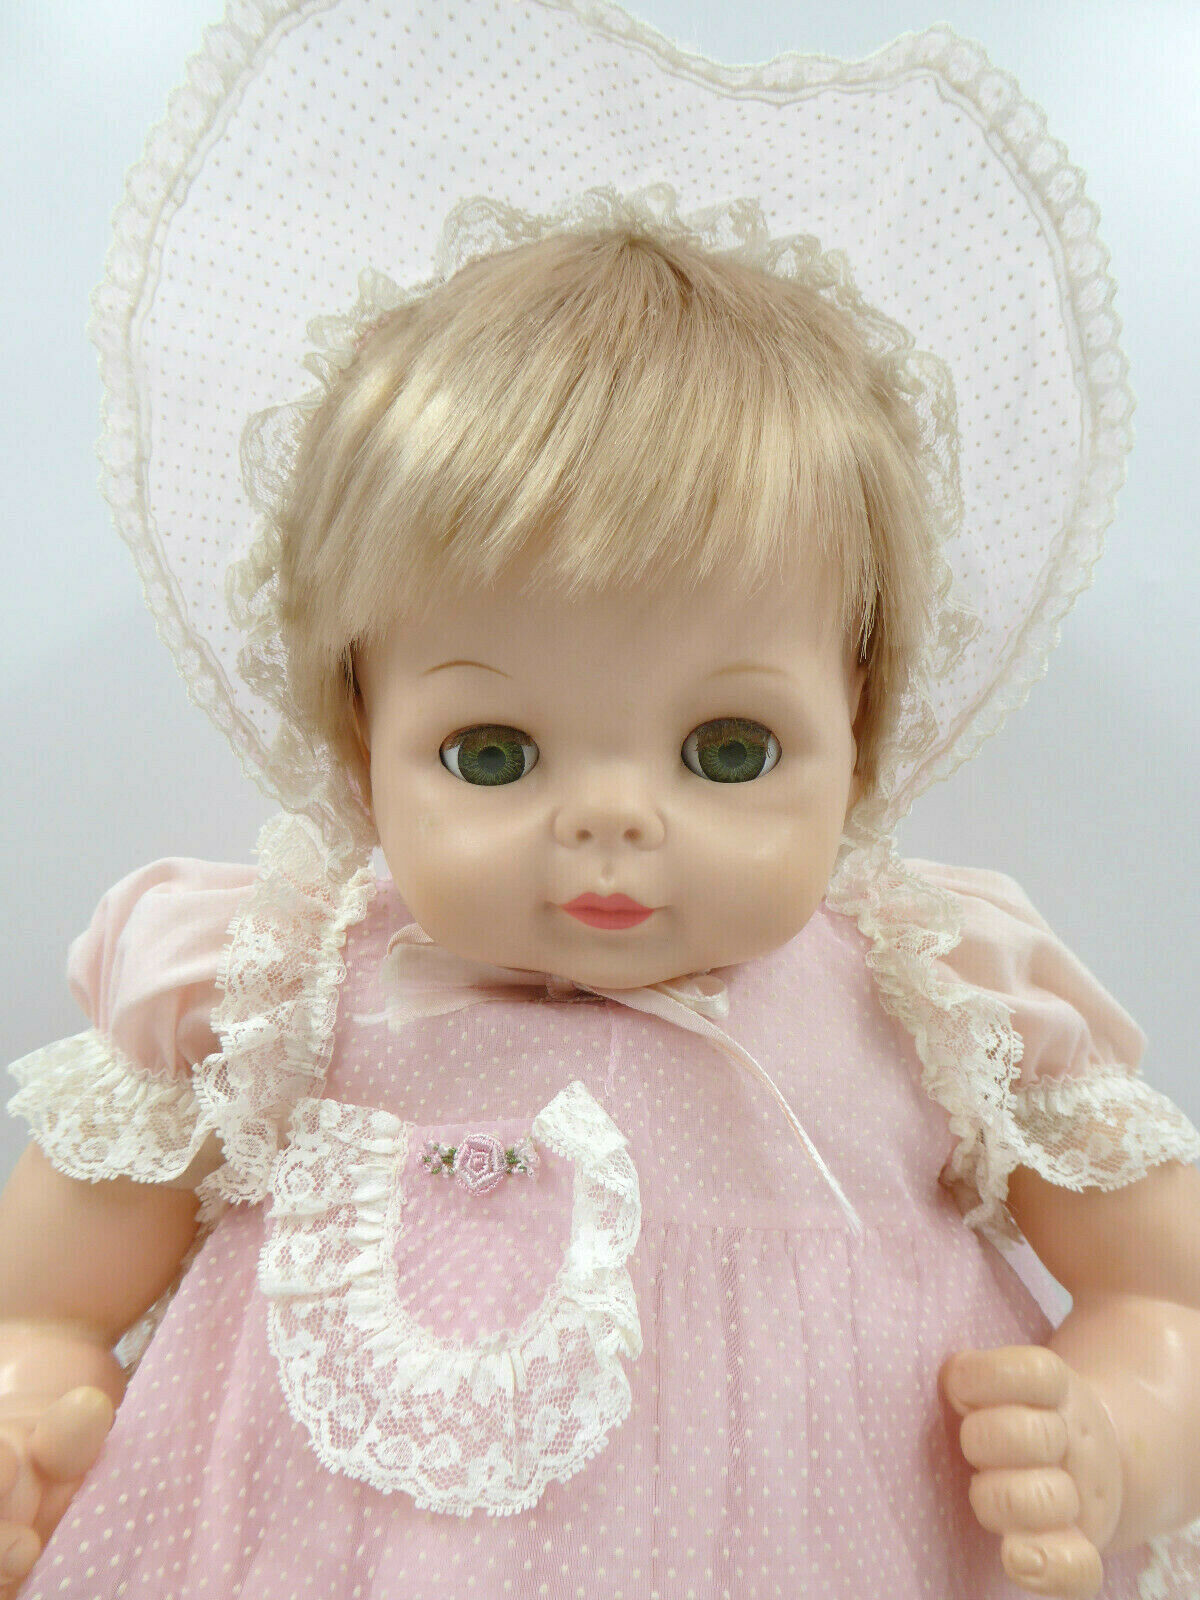 Vintage Vogue Baby Dear 25" Doll Blonde Blue Sleepy Eyes Cloth Body Cute Chubby